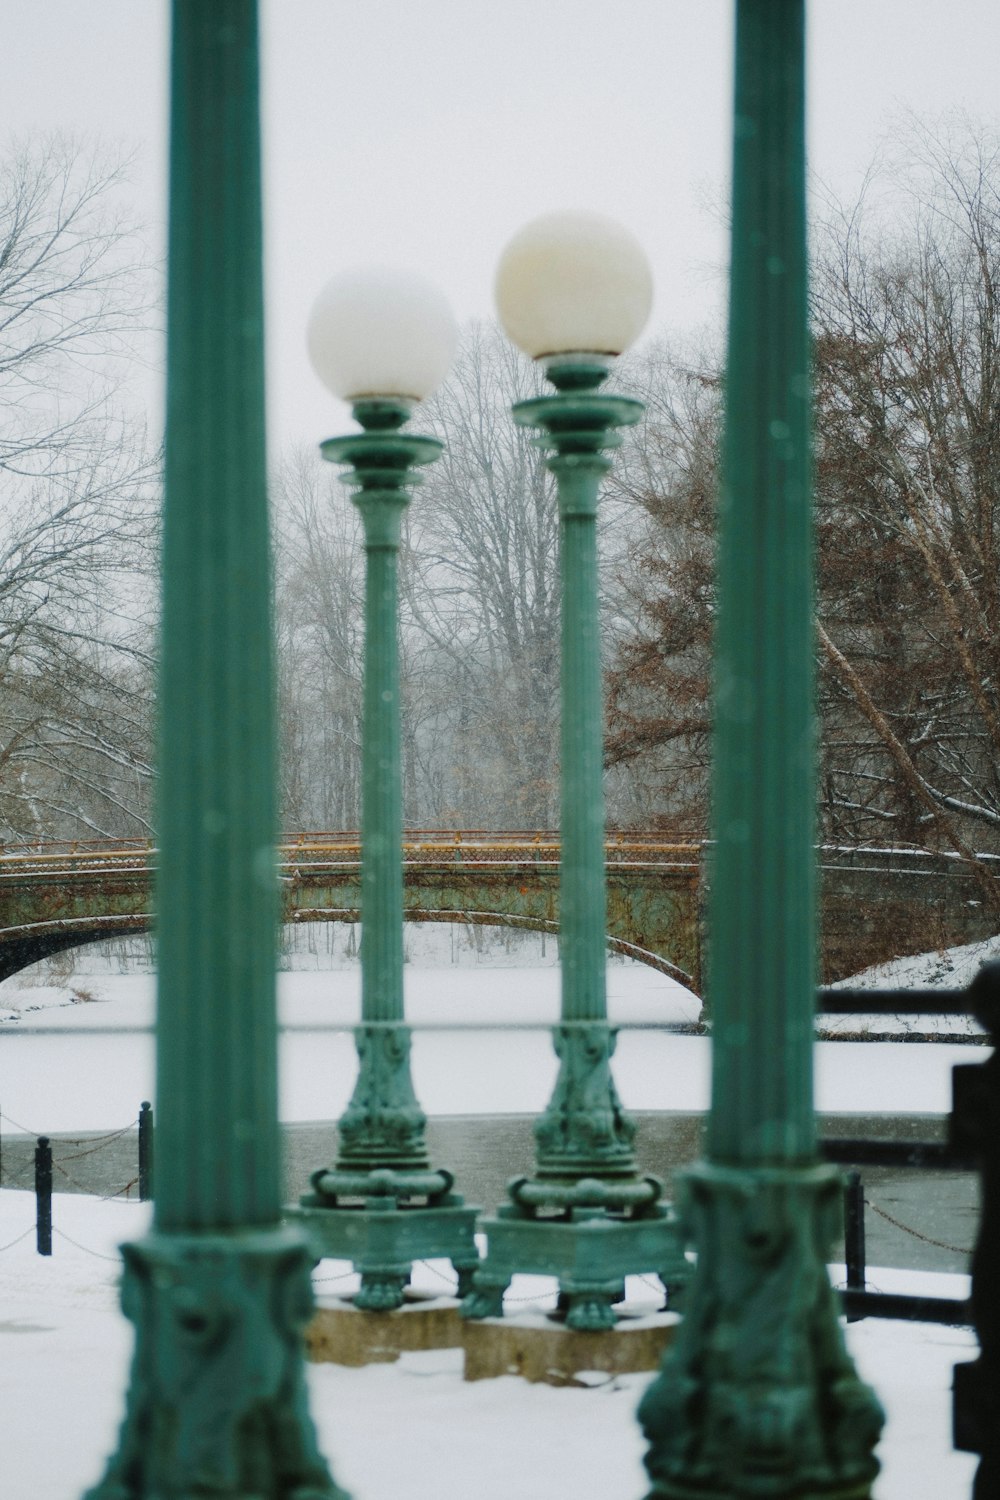 un couple de lampadaires verts assis dans la neige